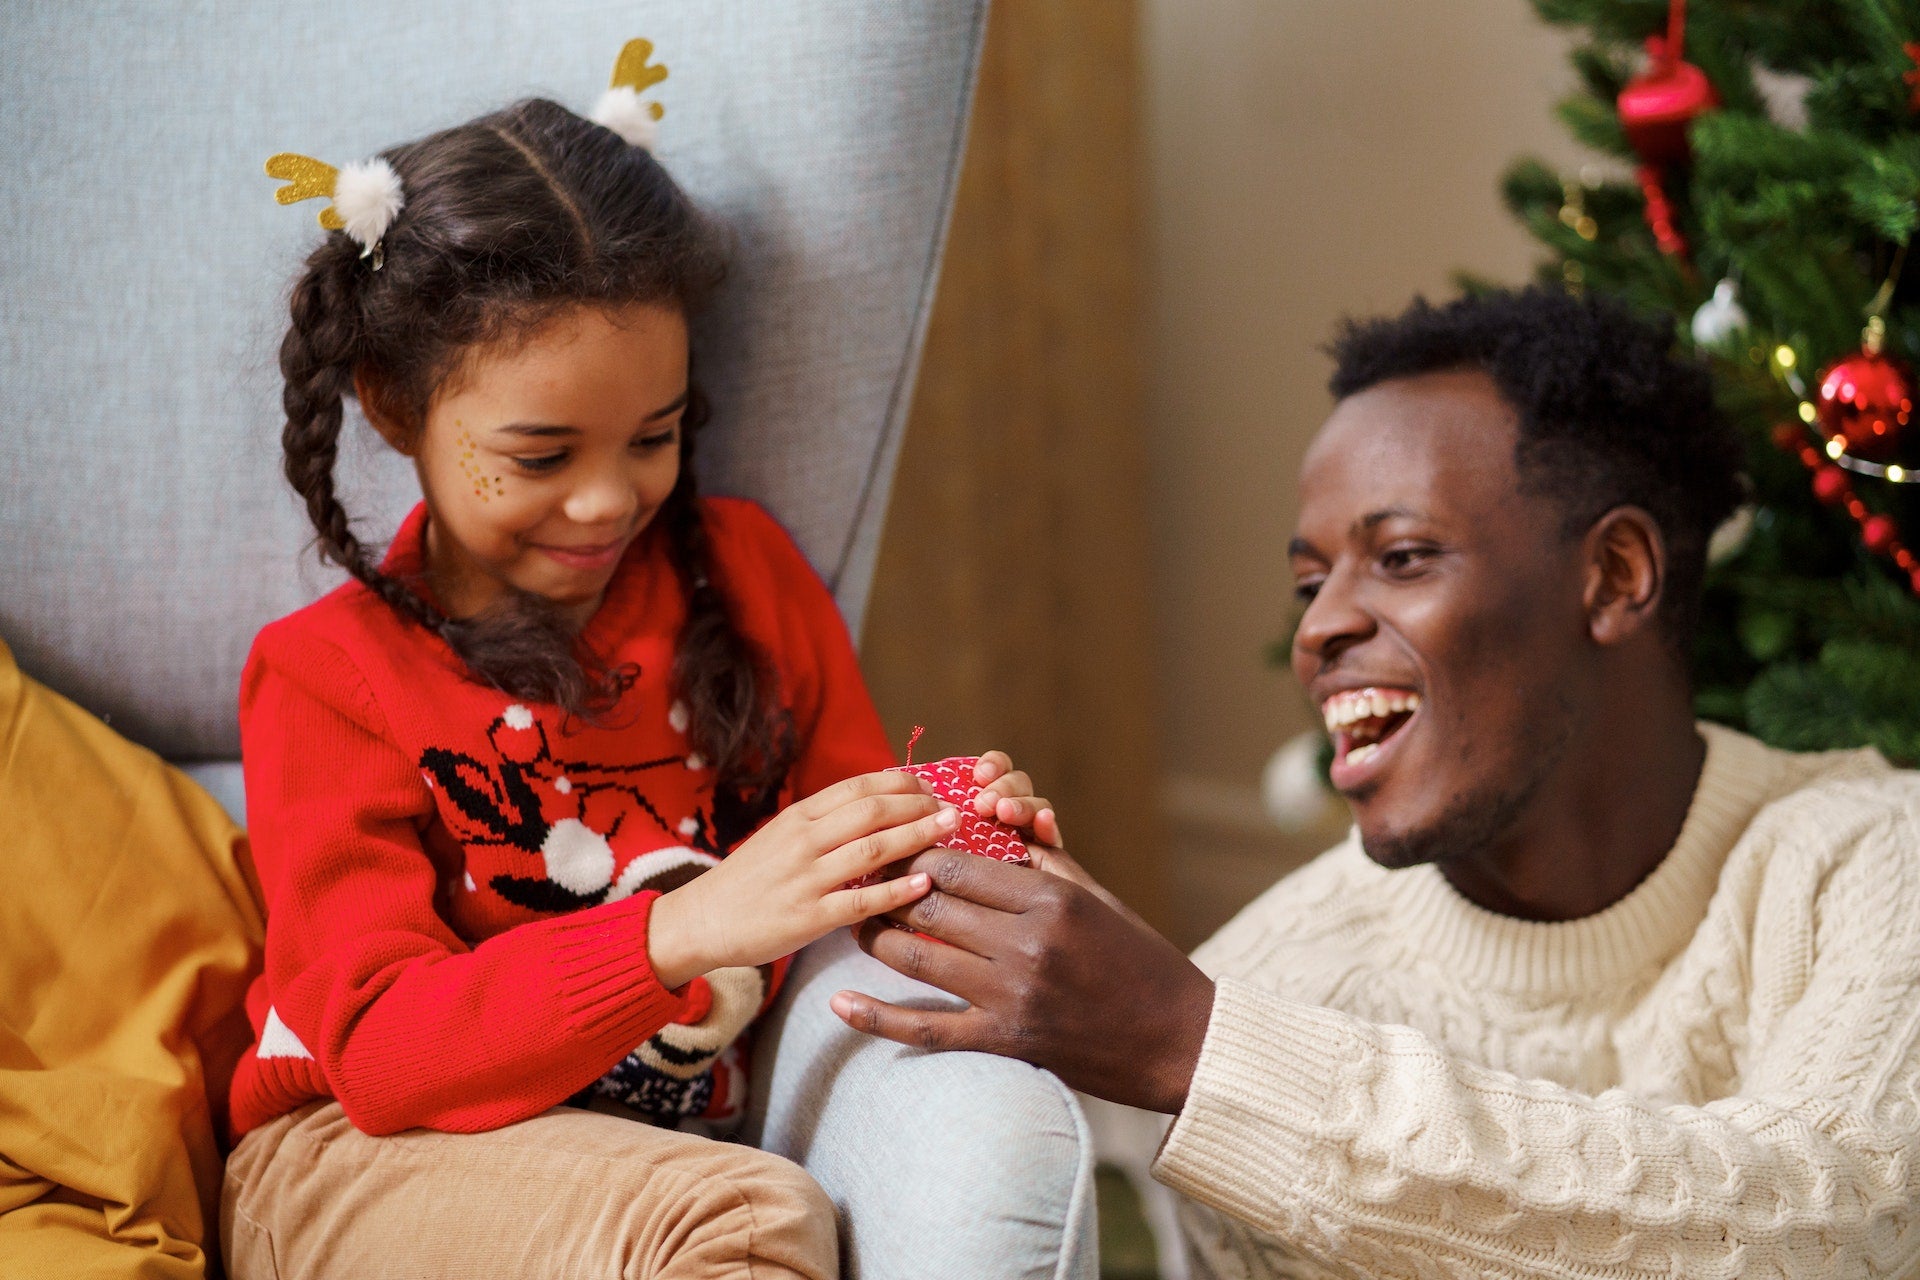 Svårt med idéer för julklappar till pappa? Vi hjälper dig!